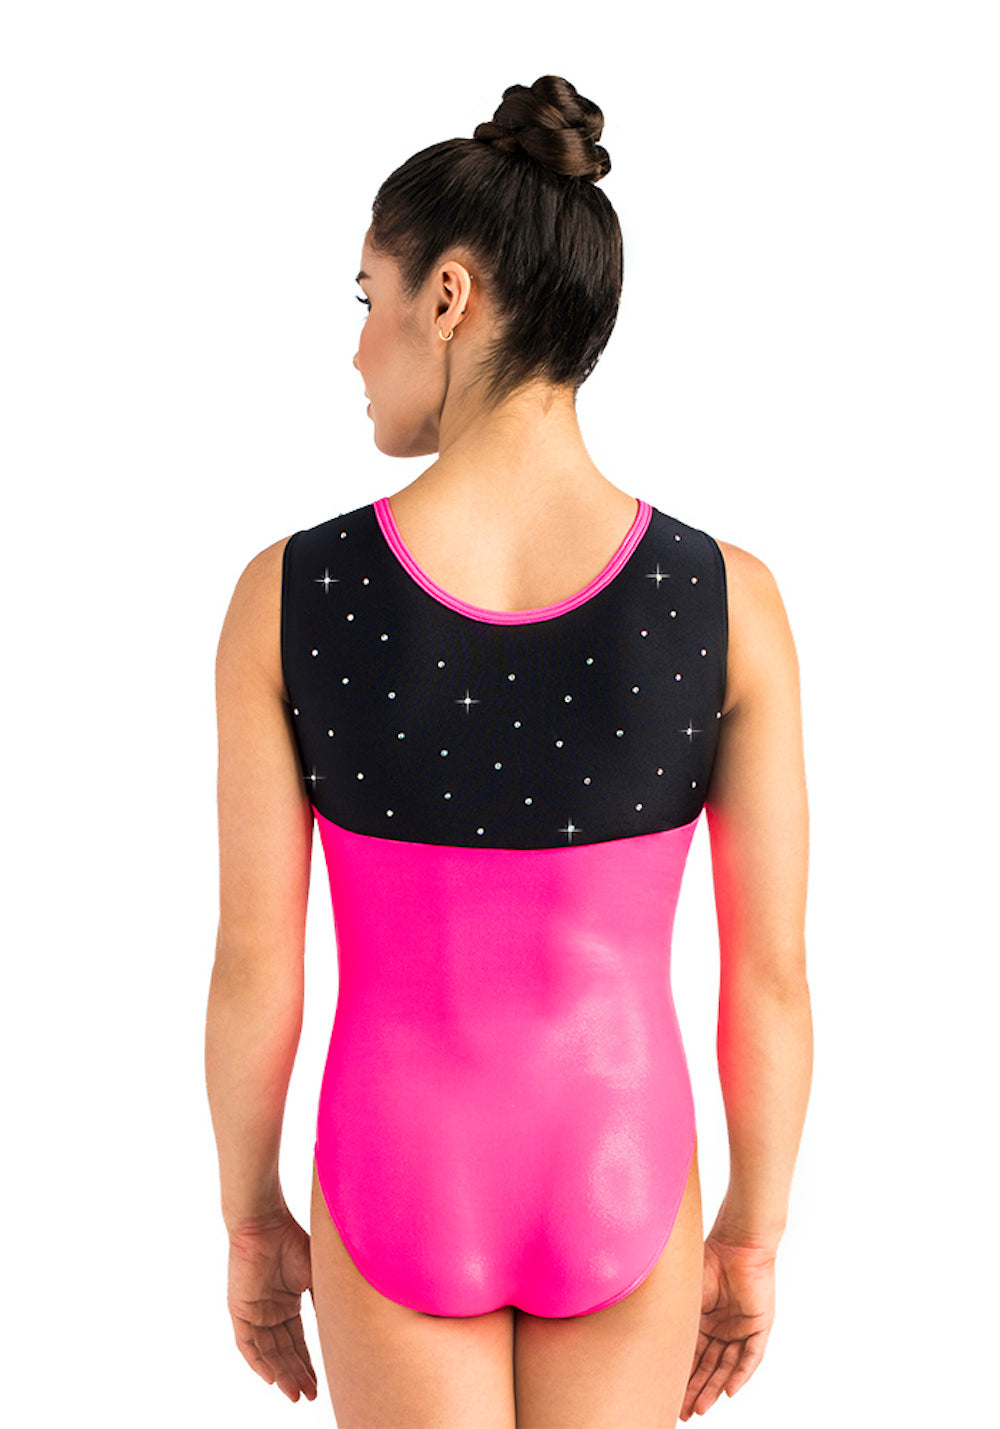 Ervy Athea Leotard Fluorescent Pink Black And Graphite Elite Gymnastics 